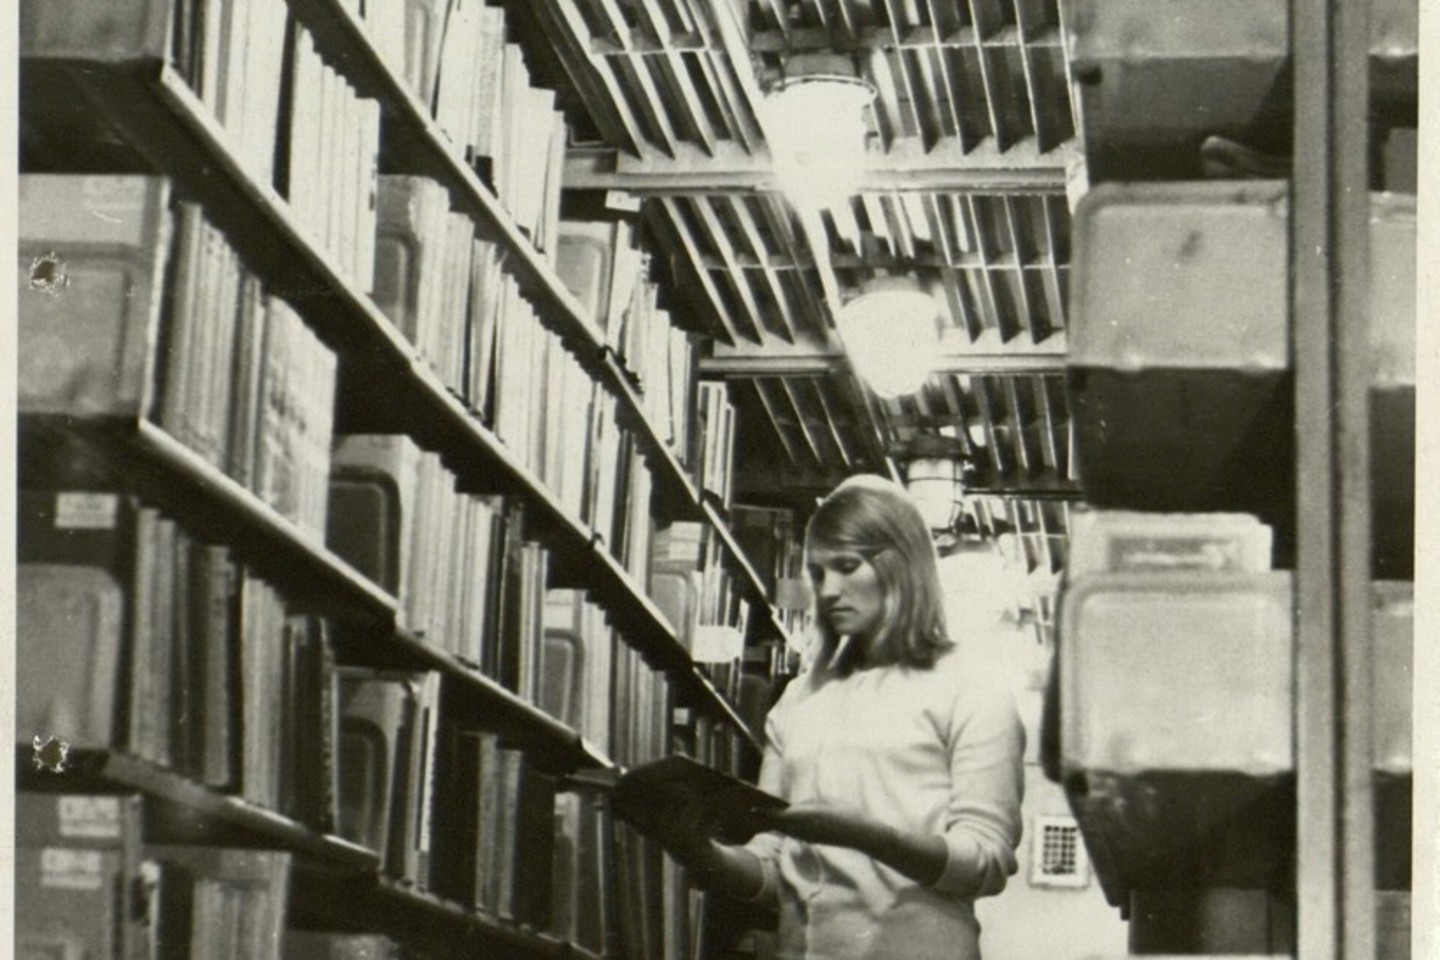 Bibliotekininkė Irena Adamonytė atrenka iš saugyklų knygas skaitytojams LSSR valstybinėje respublikinėje bibliotekoje. 1968 m.<br>Lietuvos ypatingojo archyvo nuotr.